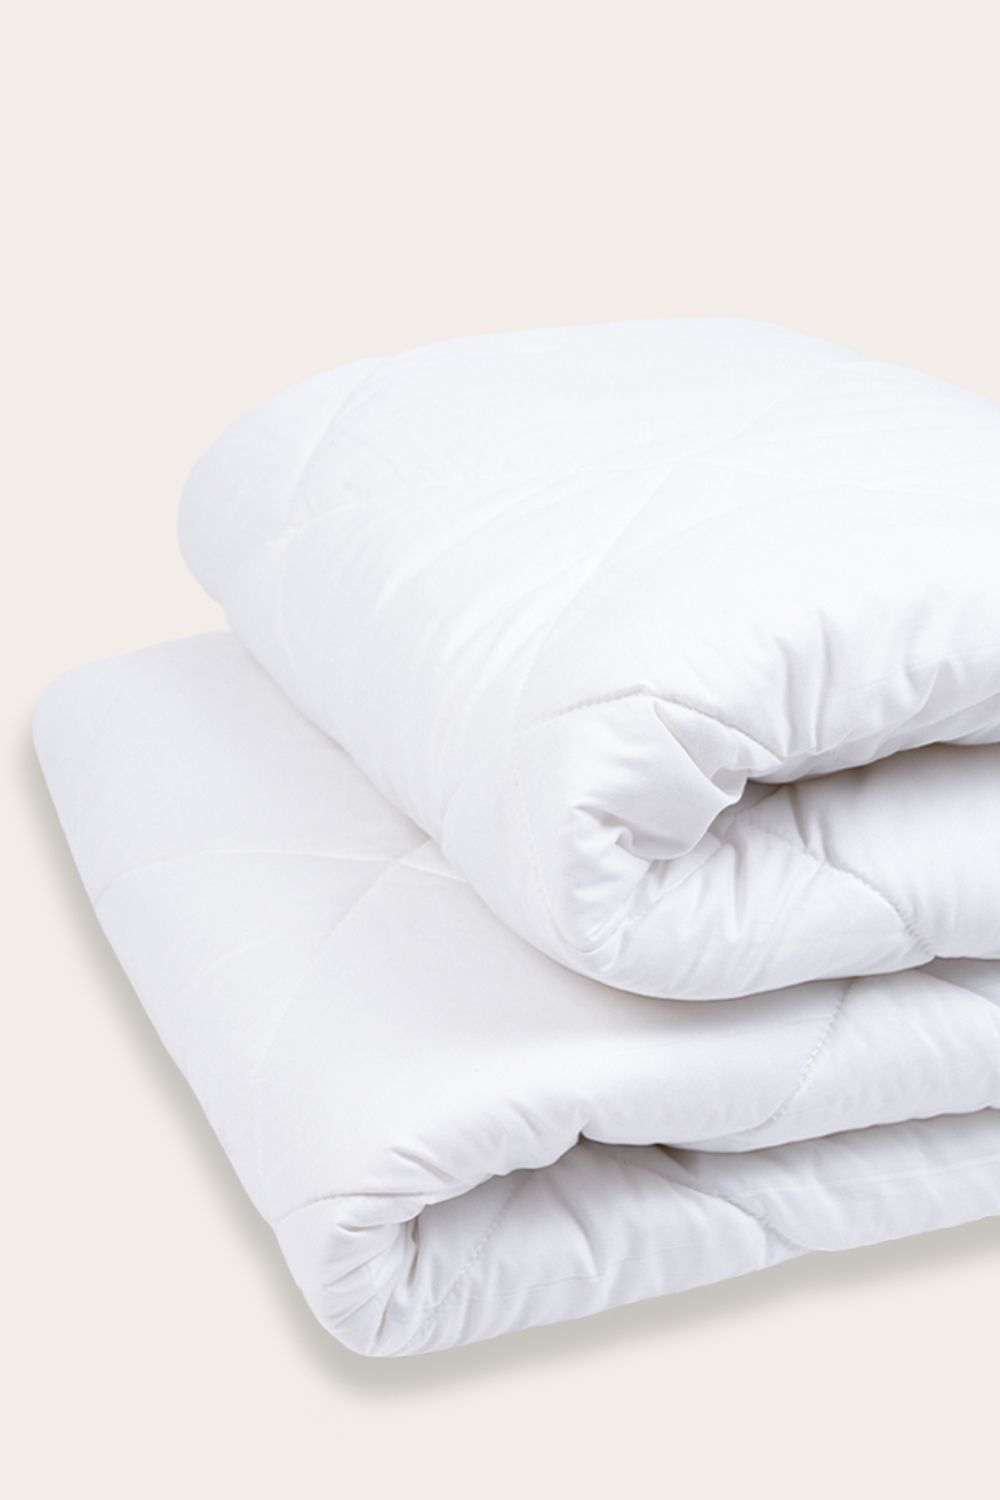 Одеяло SONNO AURA 2-сп. 170х205 гипоаллергенное , наполнитель Amicor TM Цвет Ослепительно белый - Ослепительно белый